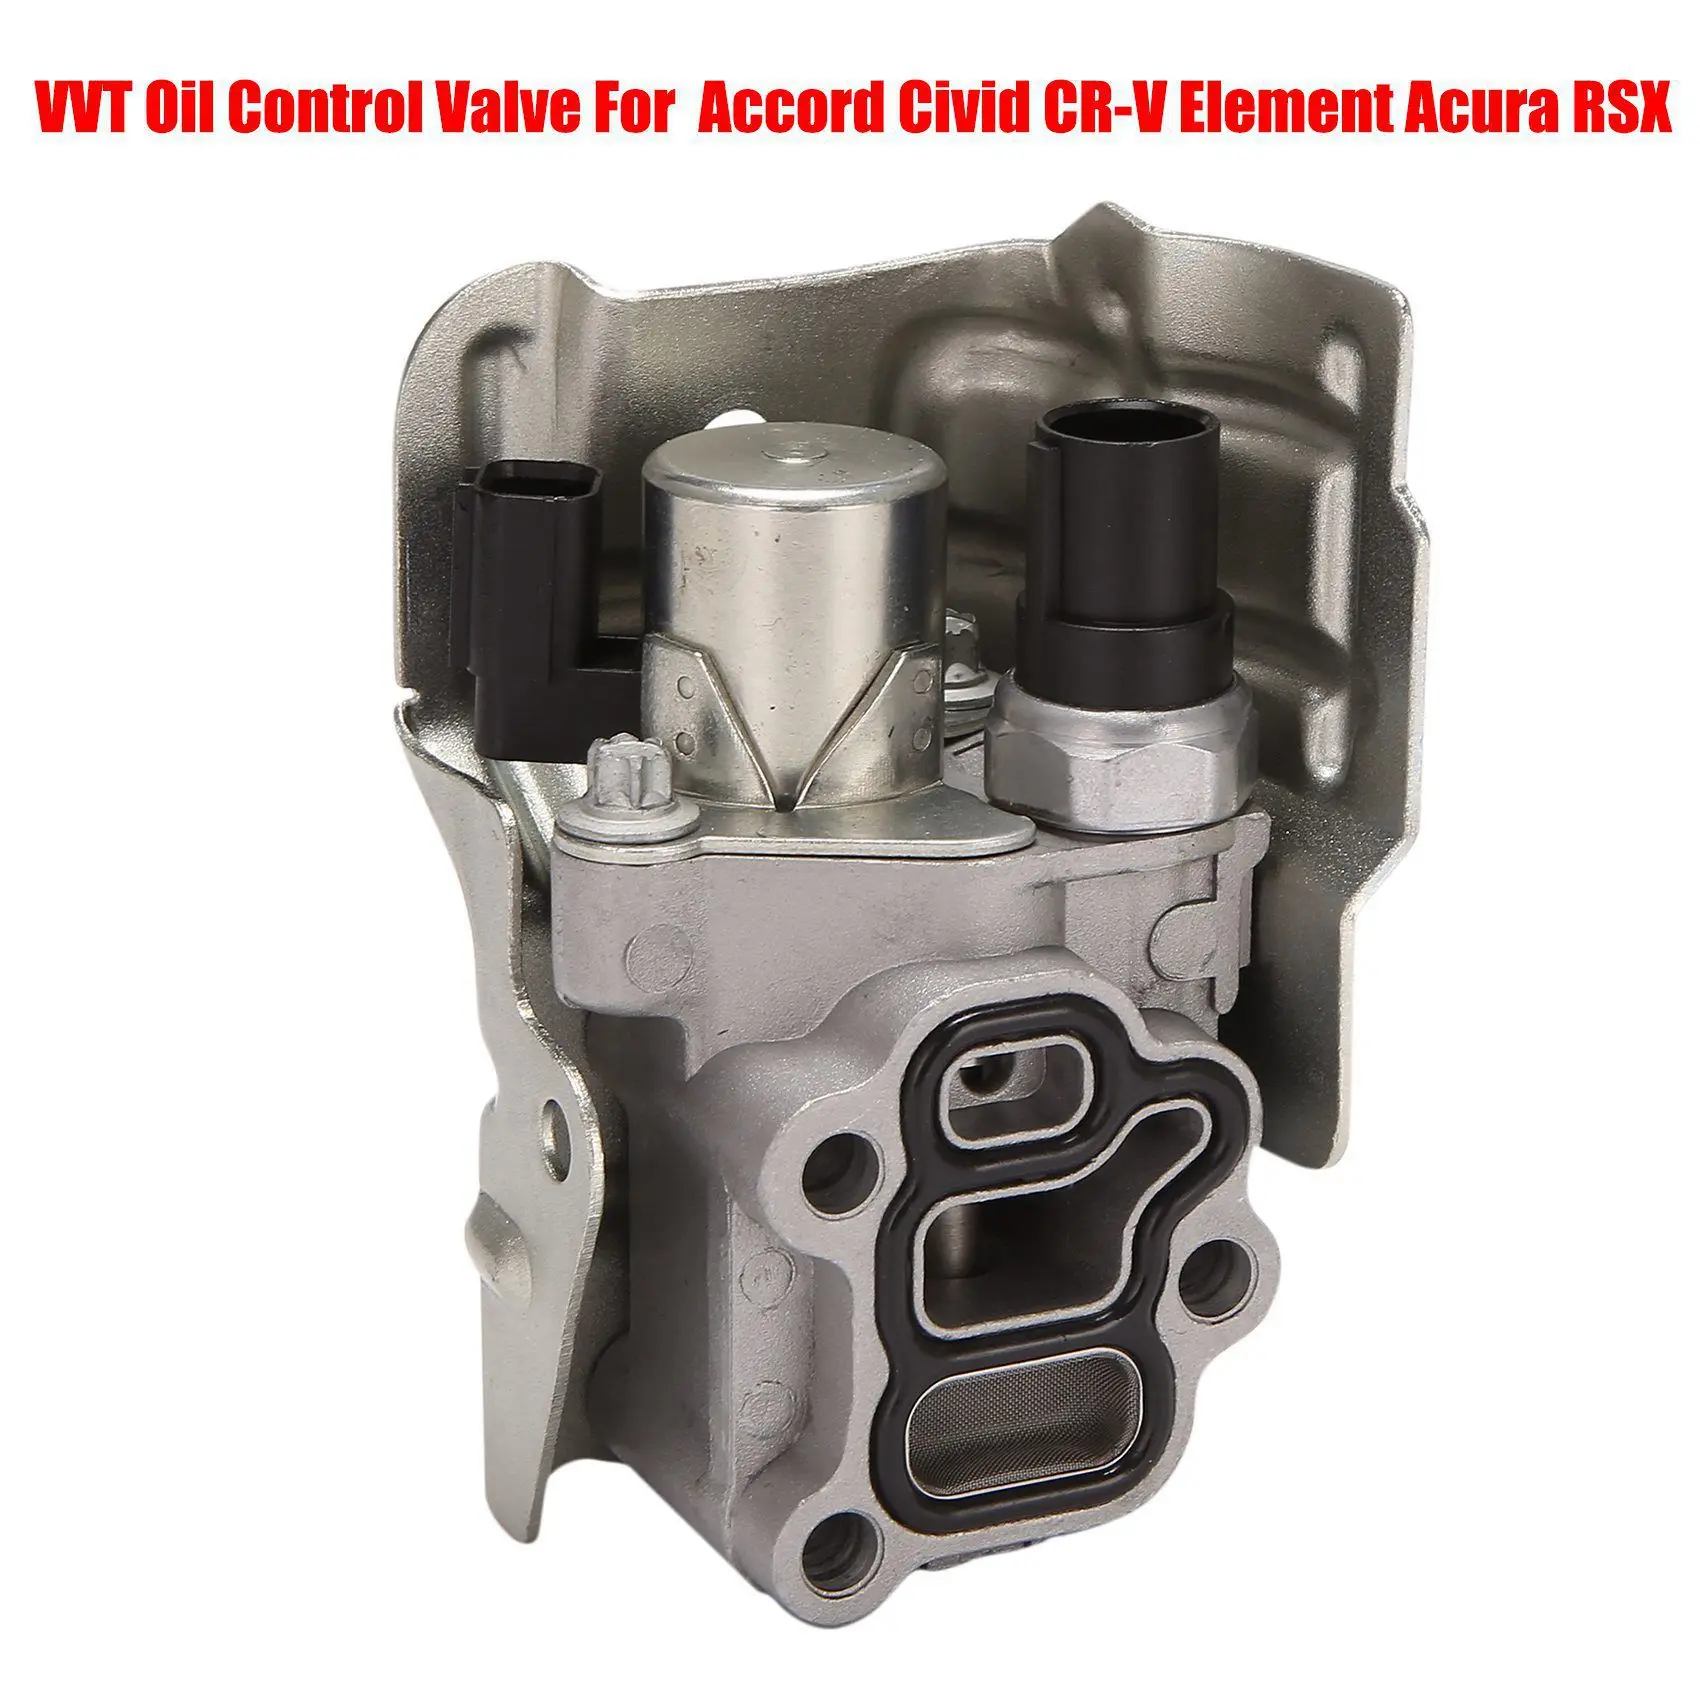 

Автомобильный клапан управления маслом VVT VTEC соленоид, Шпульный клапан для Honda Accord Civic, тонкий элемент Acura RSX 15810RAAA03